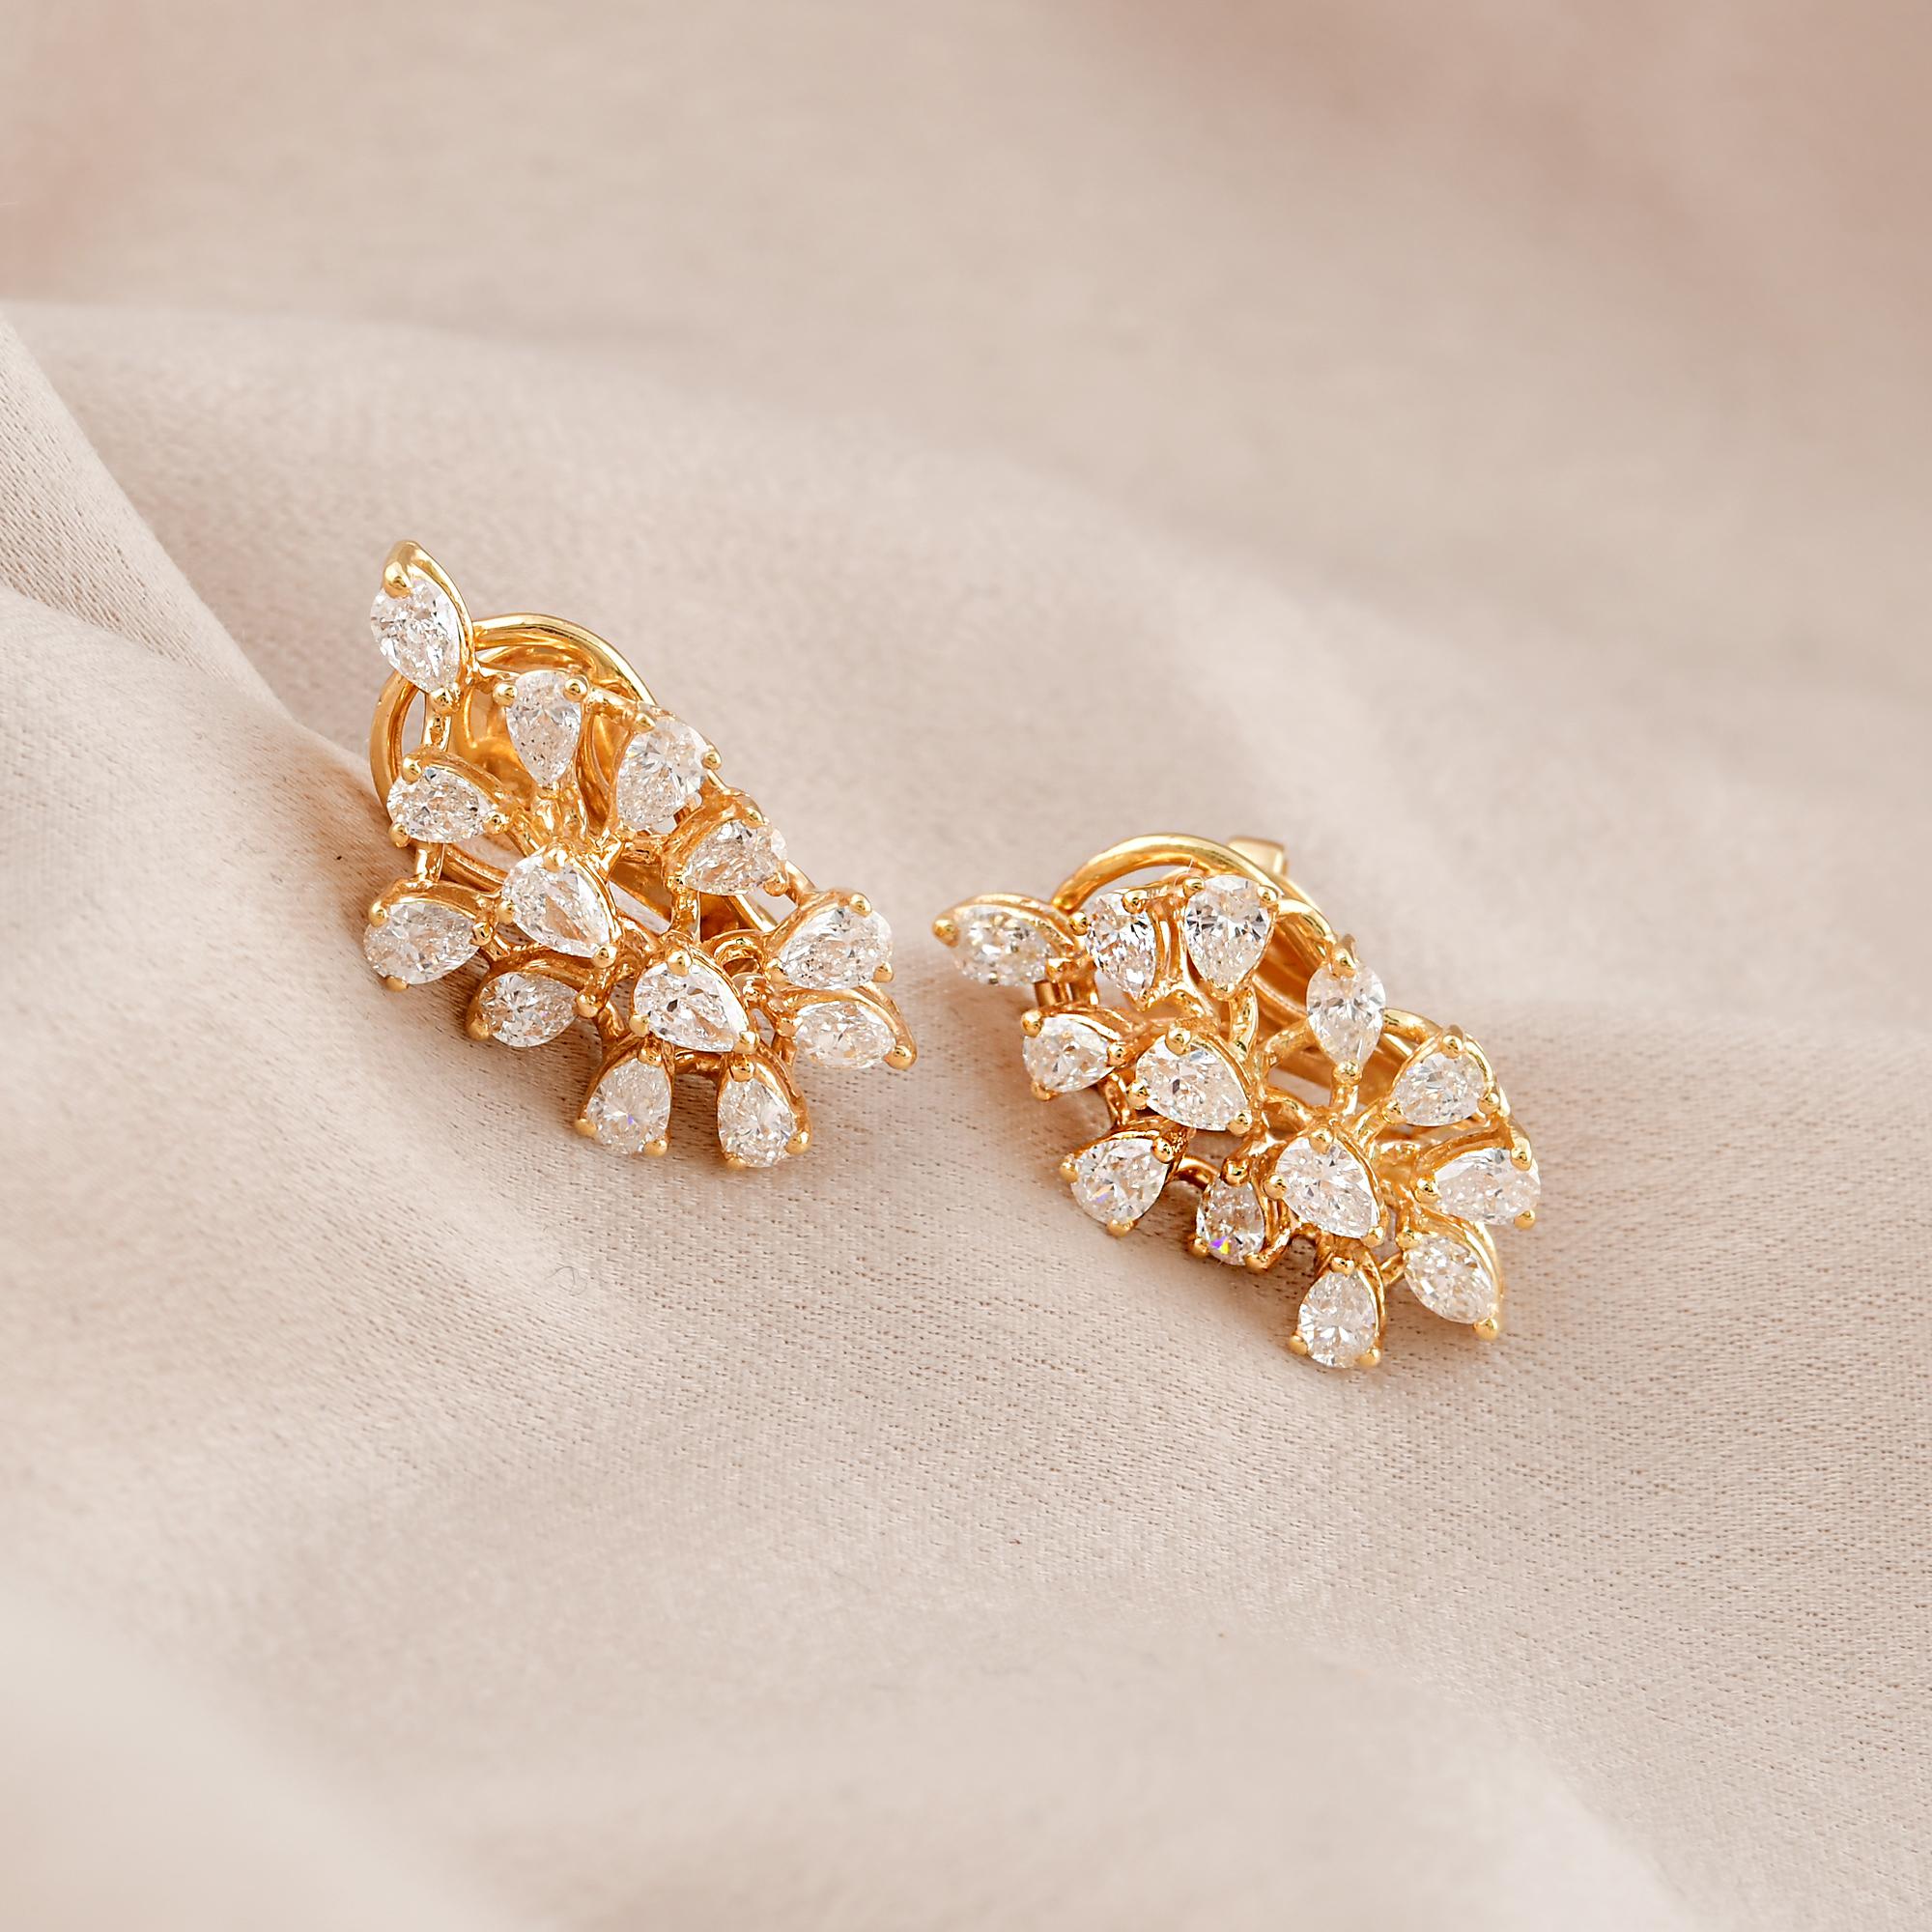 Pear Cut Pear Shape Diamond Lever Back Earrings 18 Karat Yellow Gold Handmade Jewelry For Sale